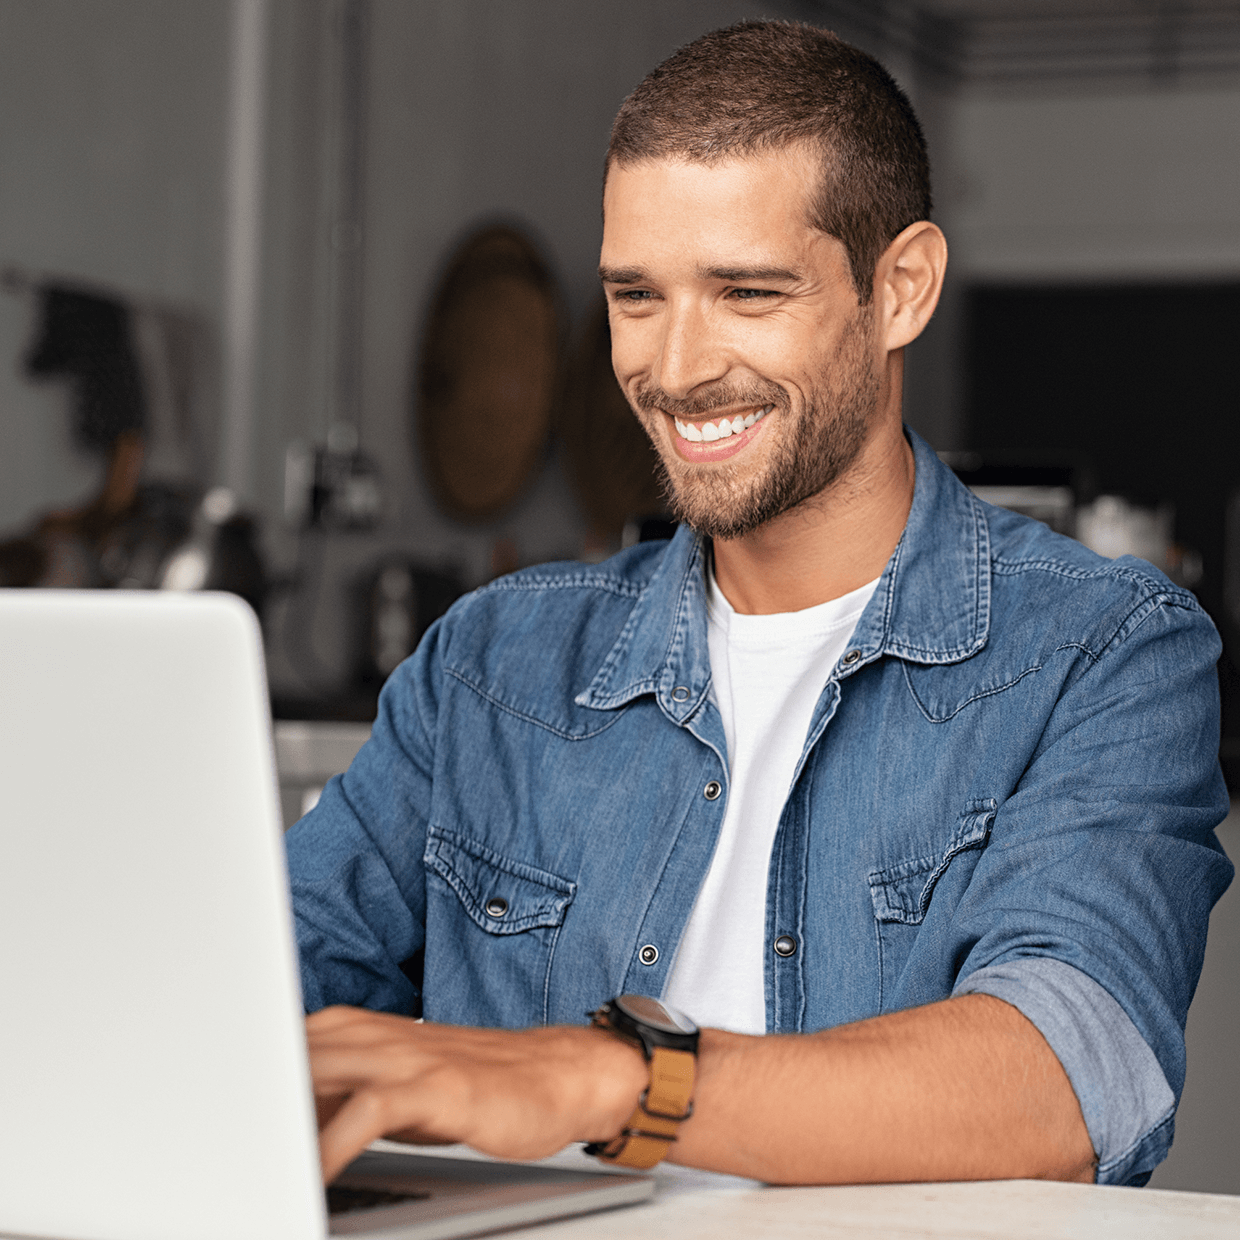 Smiling man at laptop.